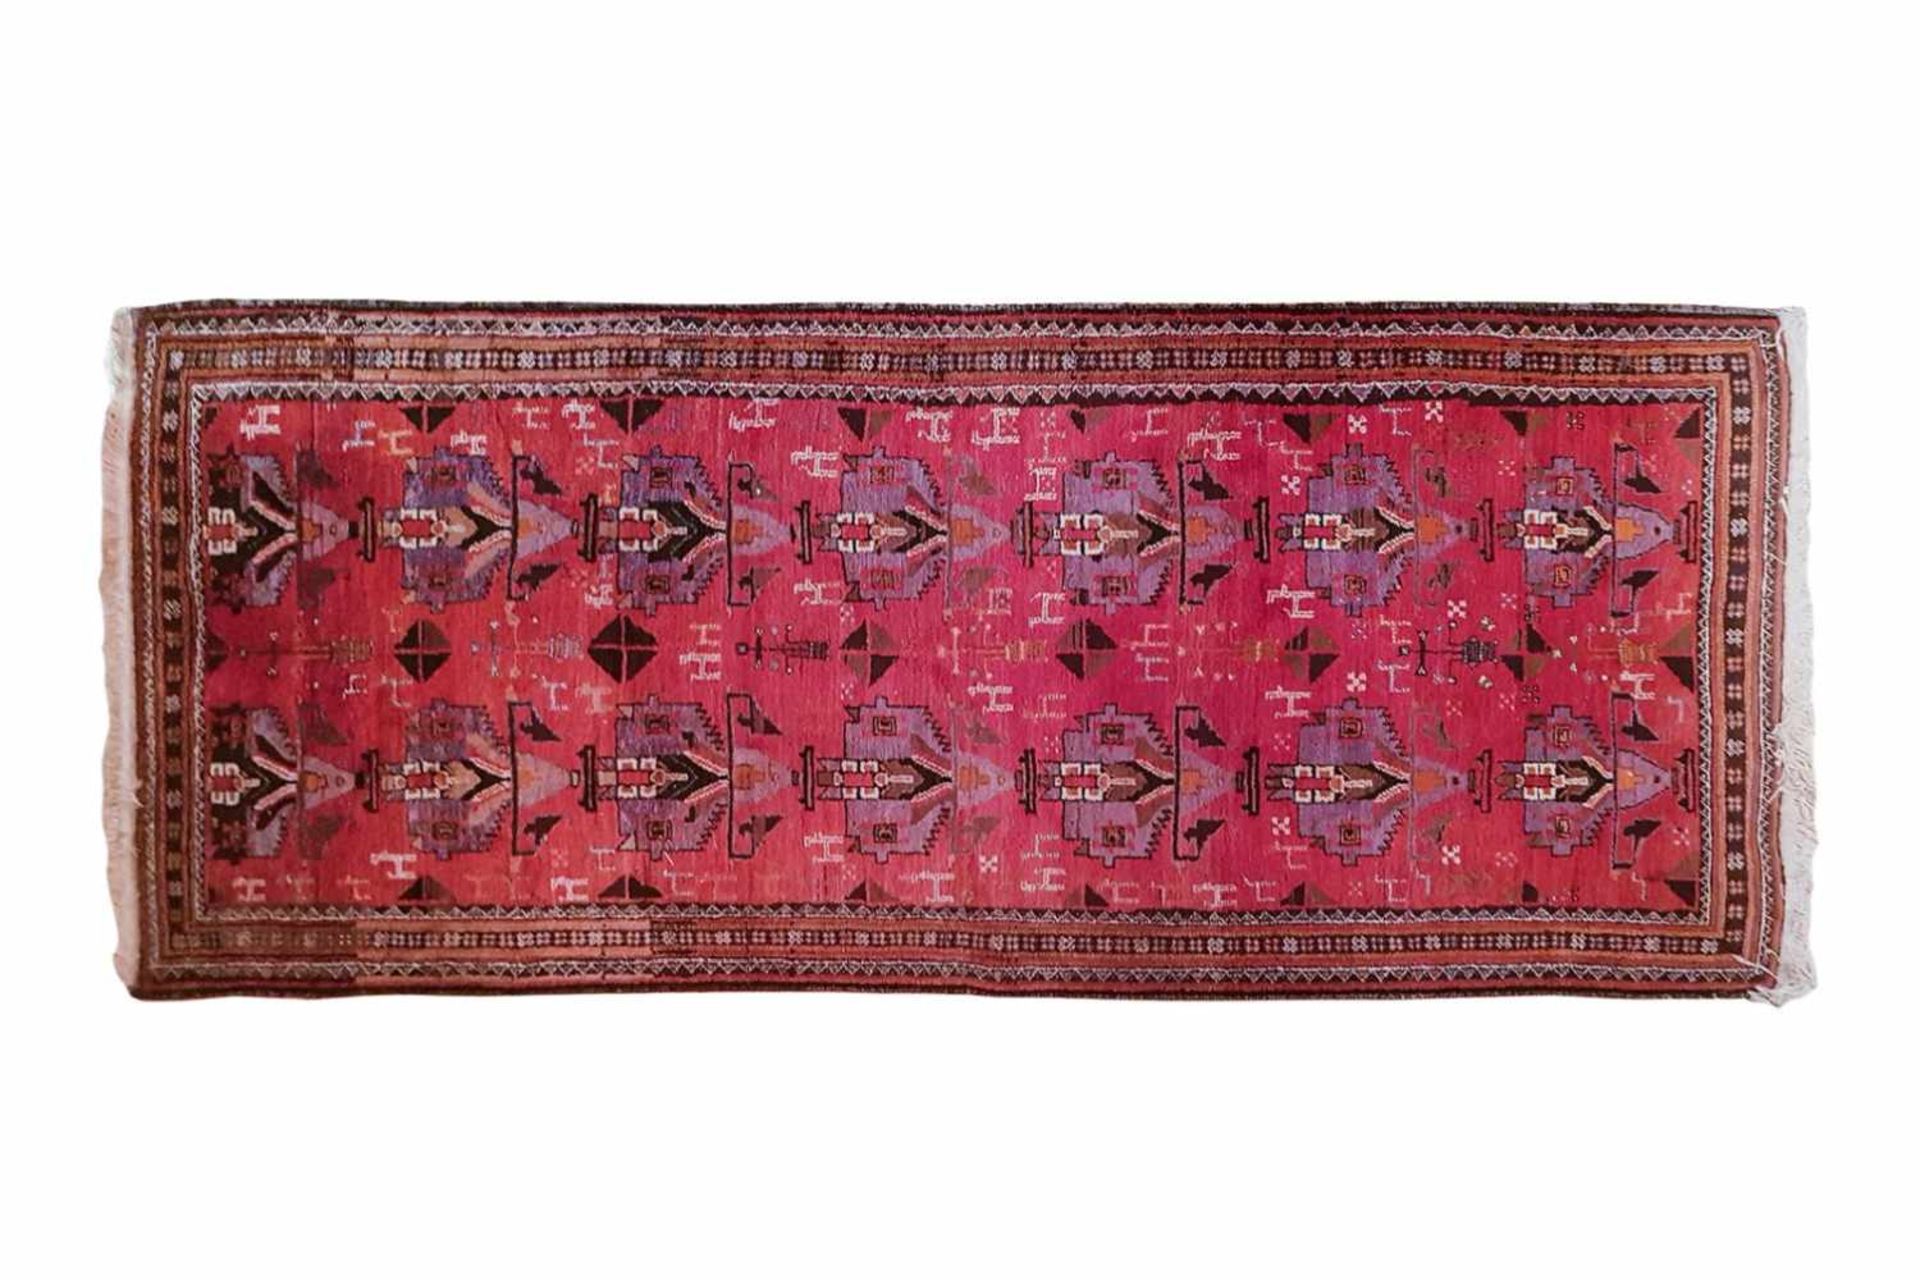 Perser HamadanHamadan Teppich, reine Wolle, gebrauchter Teppich, Maße: 200 x 120 cmPersian